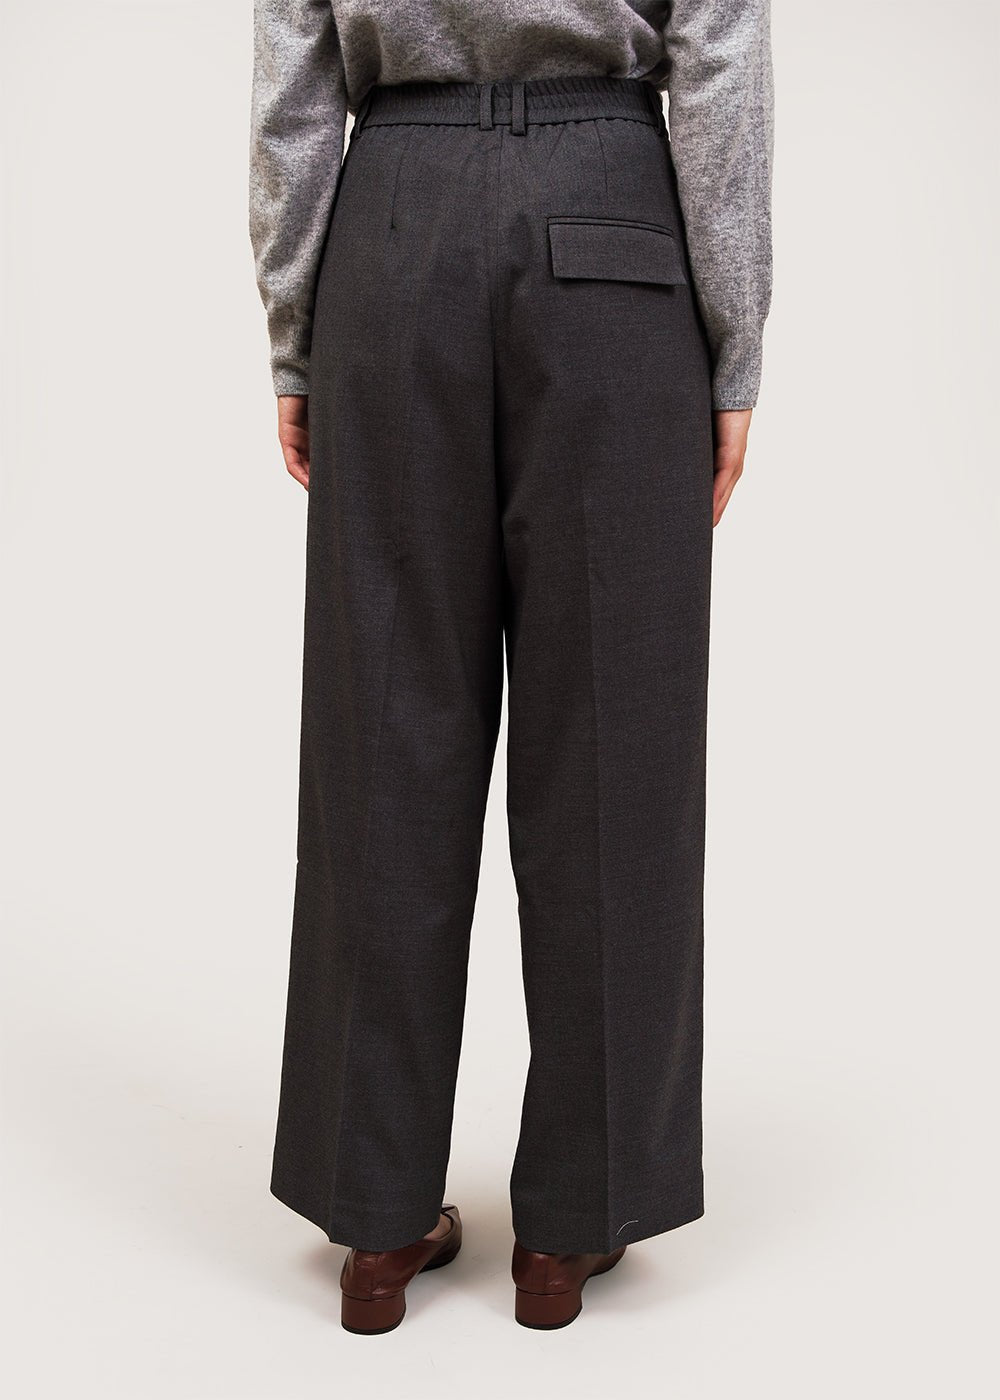 Womens Wide Leg Pants Elegant Zipper Fly High Waist Grey XS 